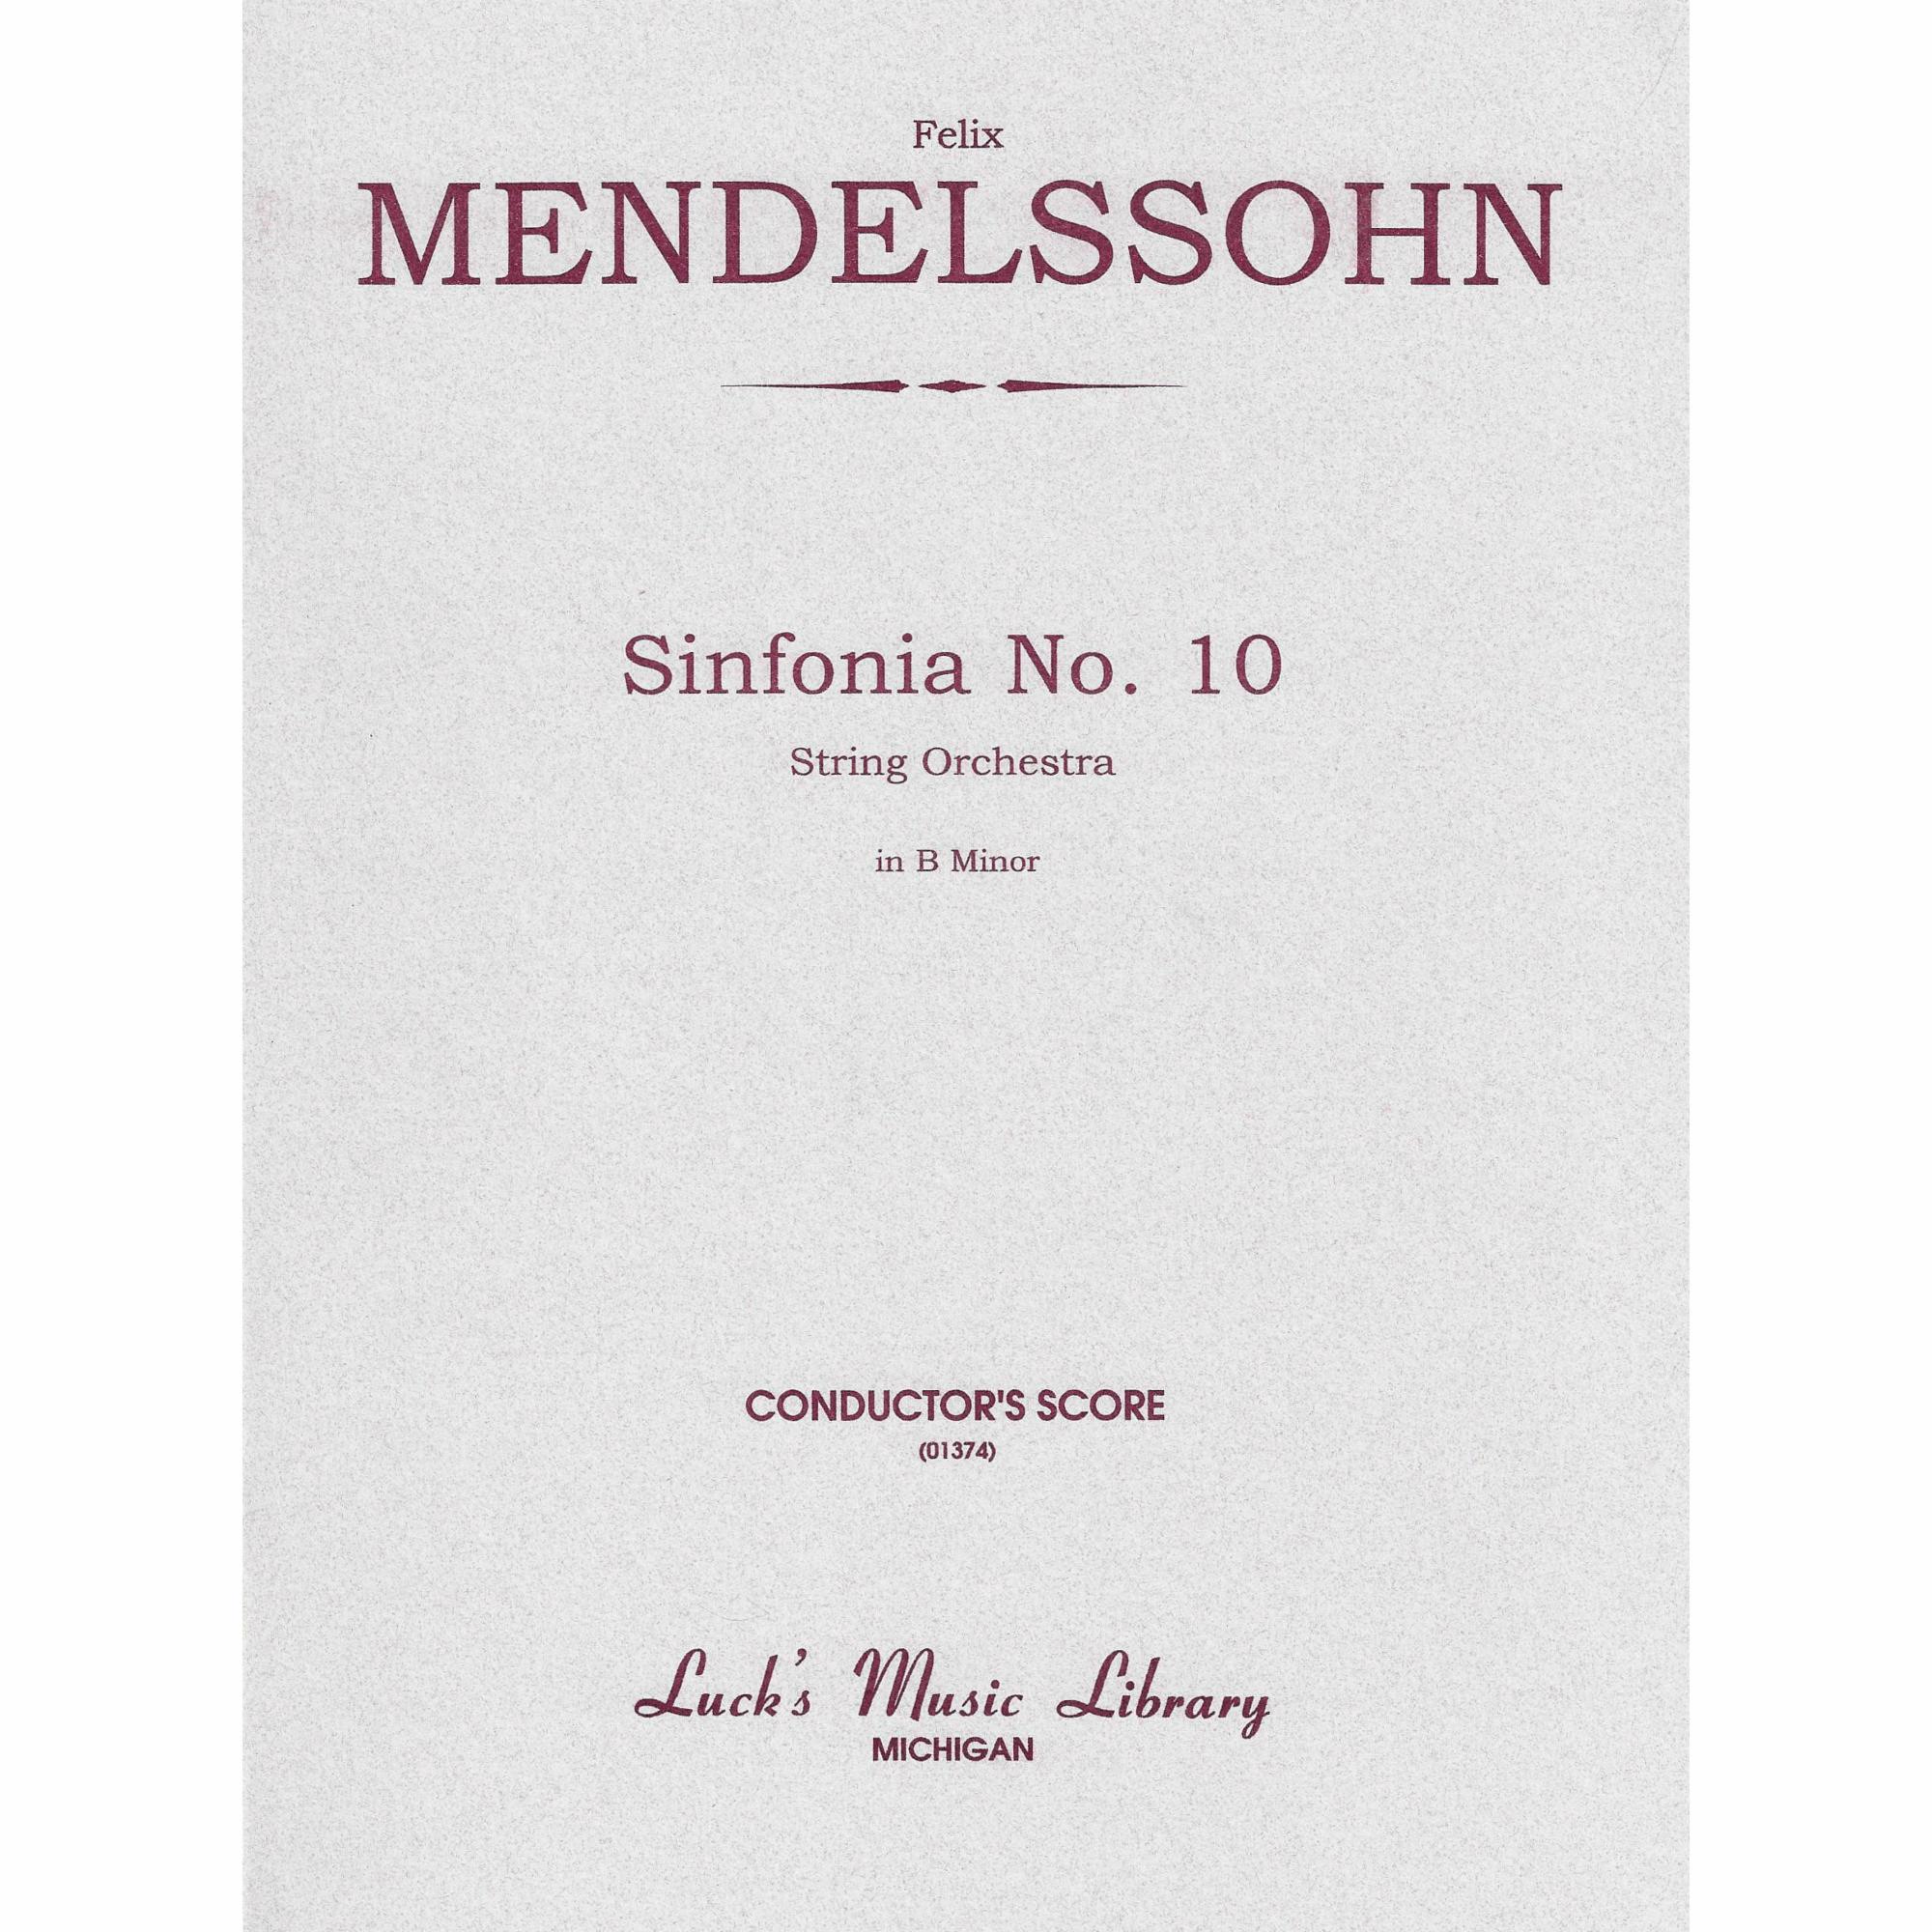 Mendelssohn -- Sinfonia No. 10 in B Minor for String Orchestra